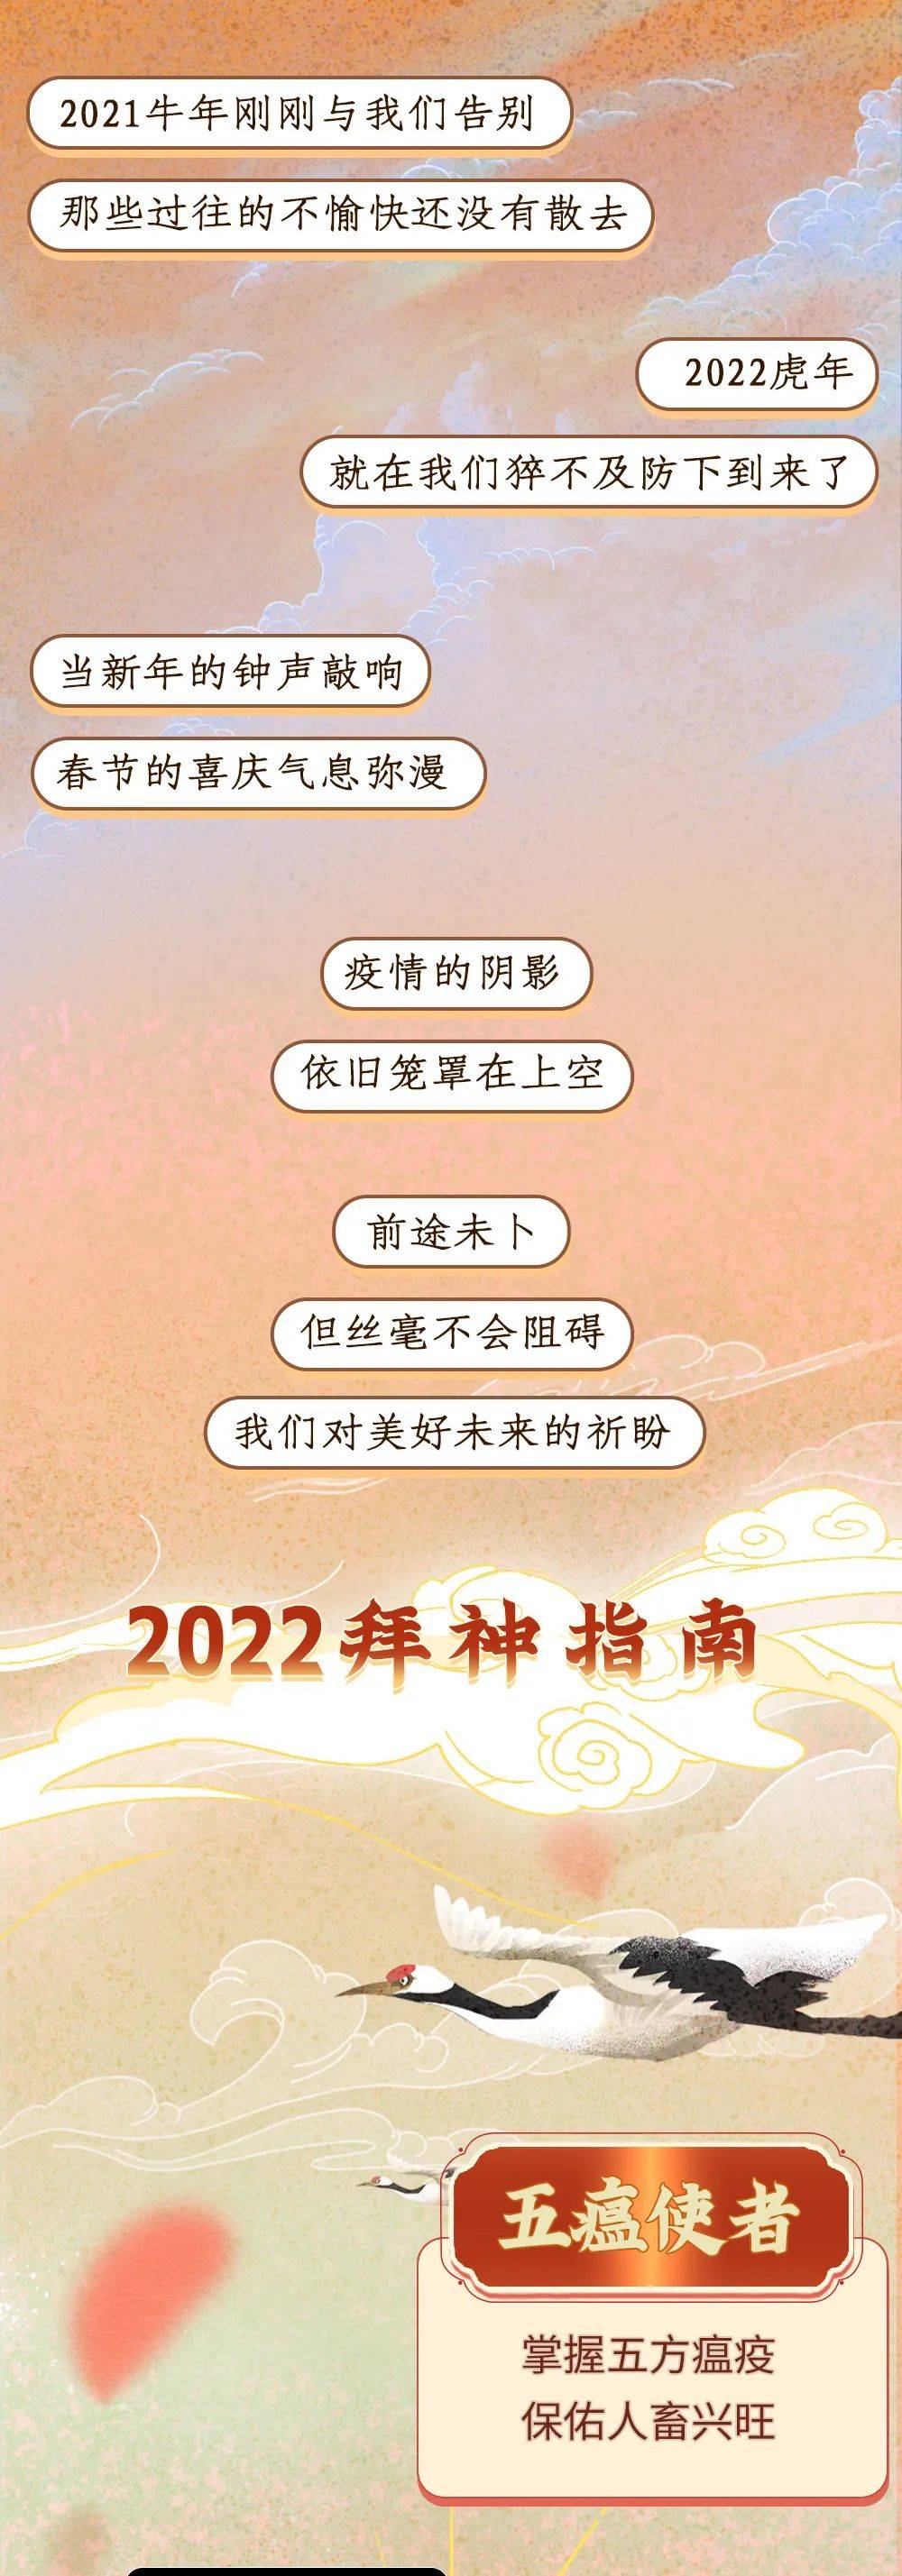 2022虎年中国神仙图鉴_图鉴_中国